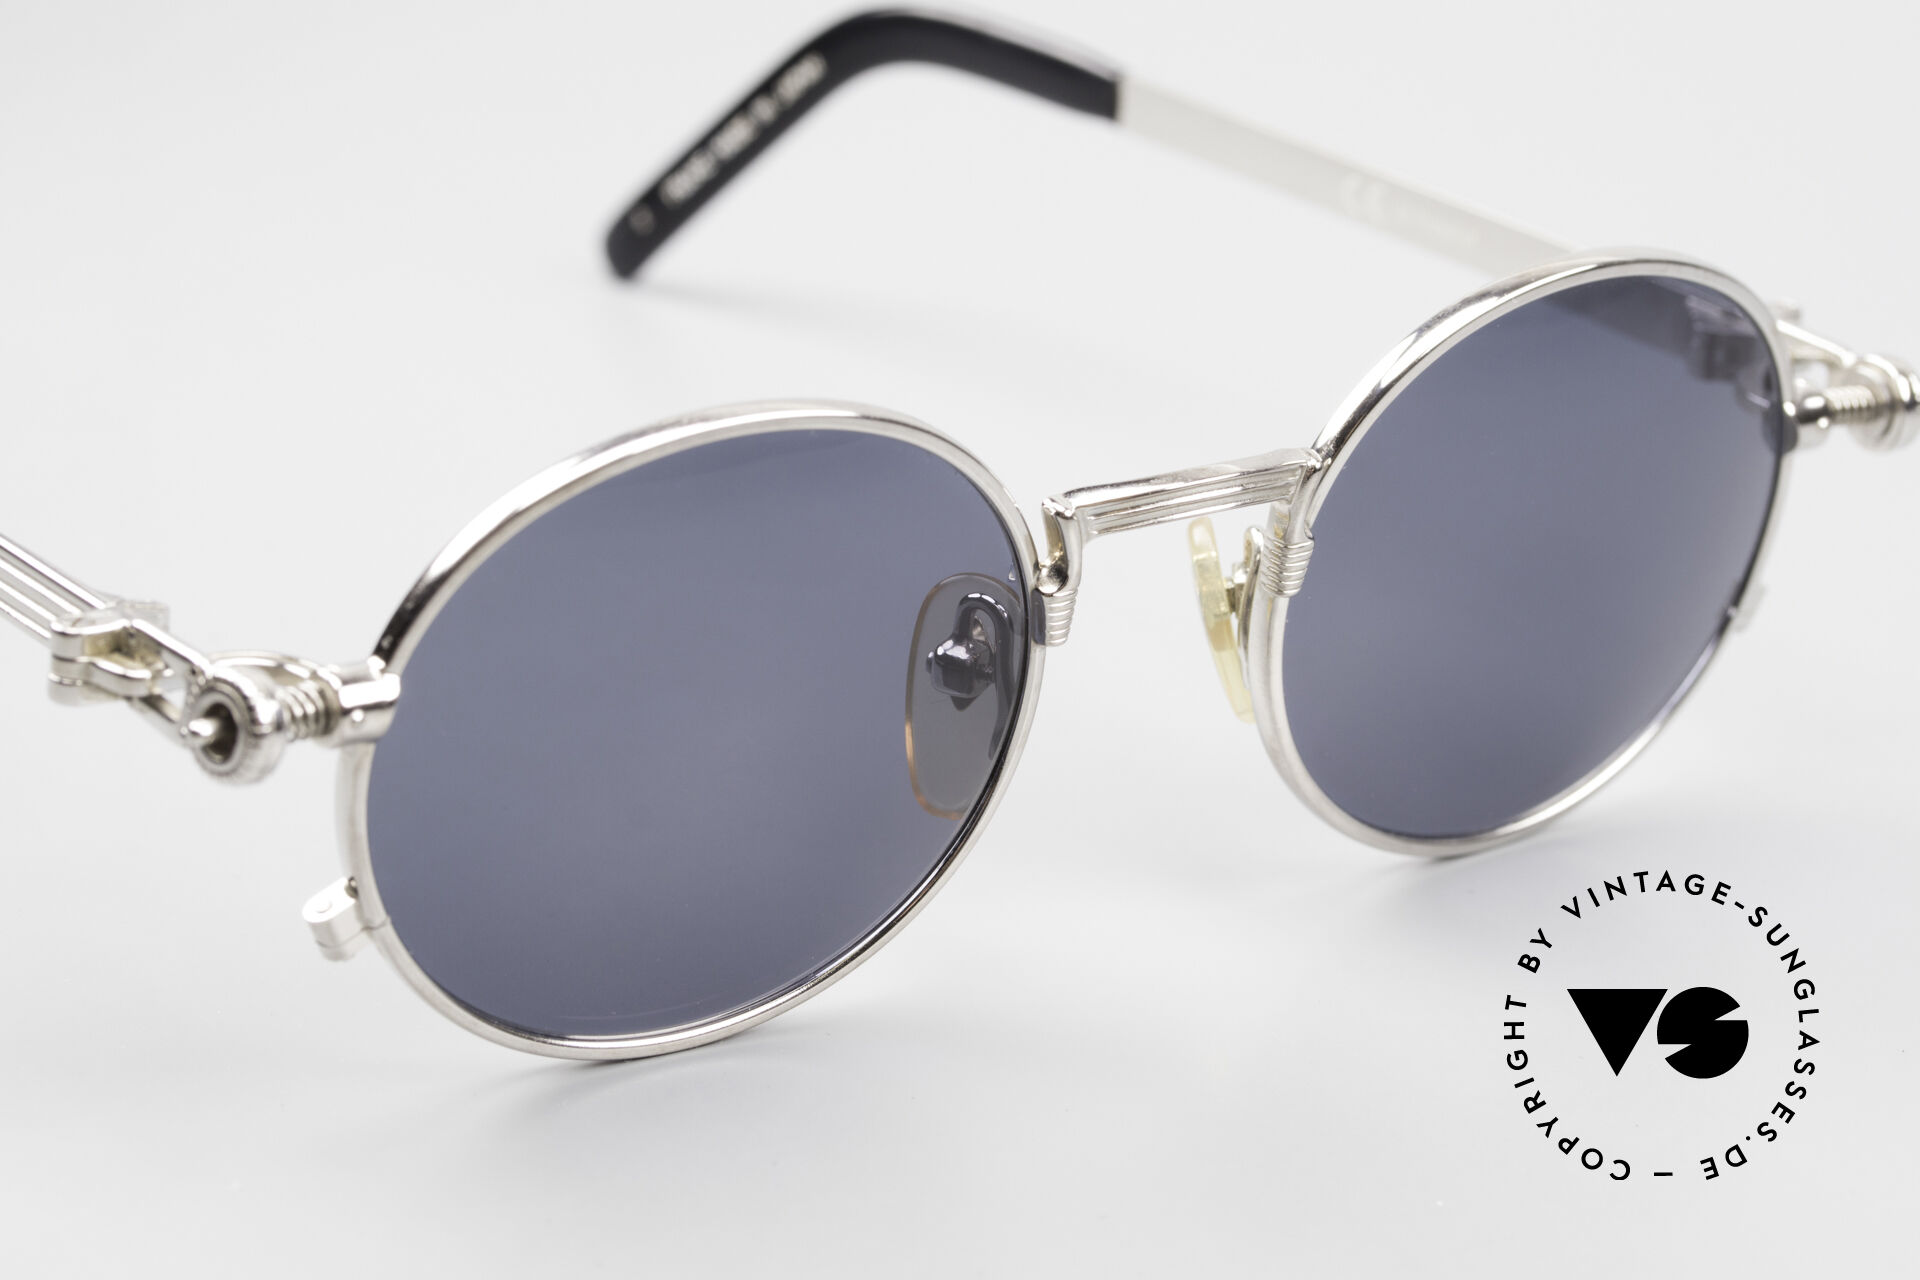 Sonnenbrillen Jean Paul Gaultier 56-4178 Runde Industrial Vintage Brille